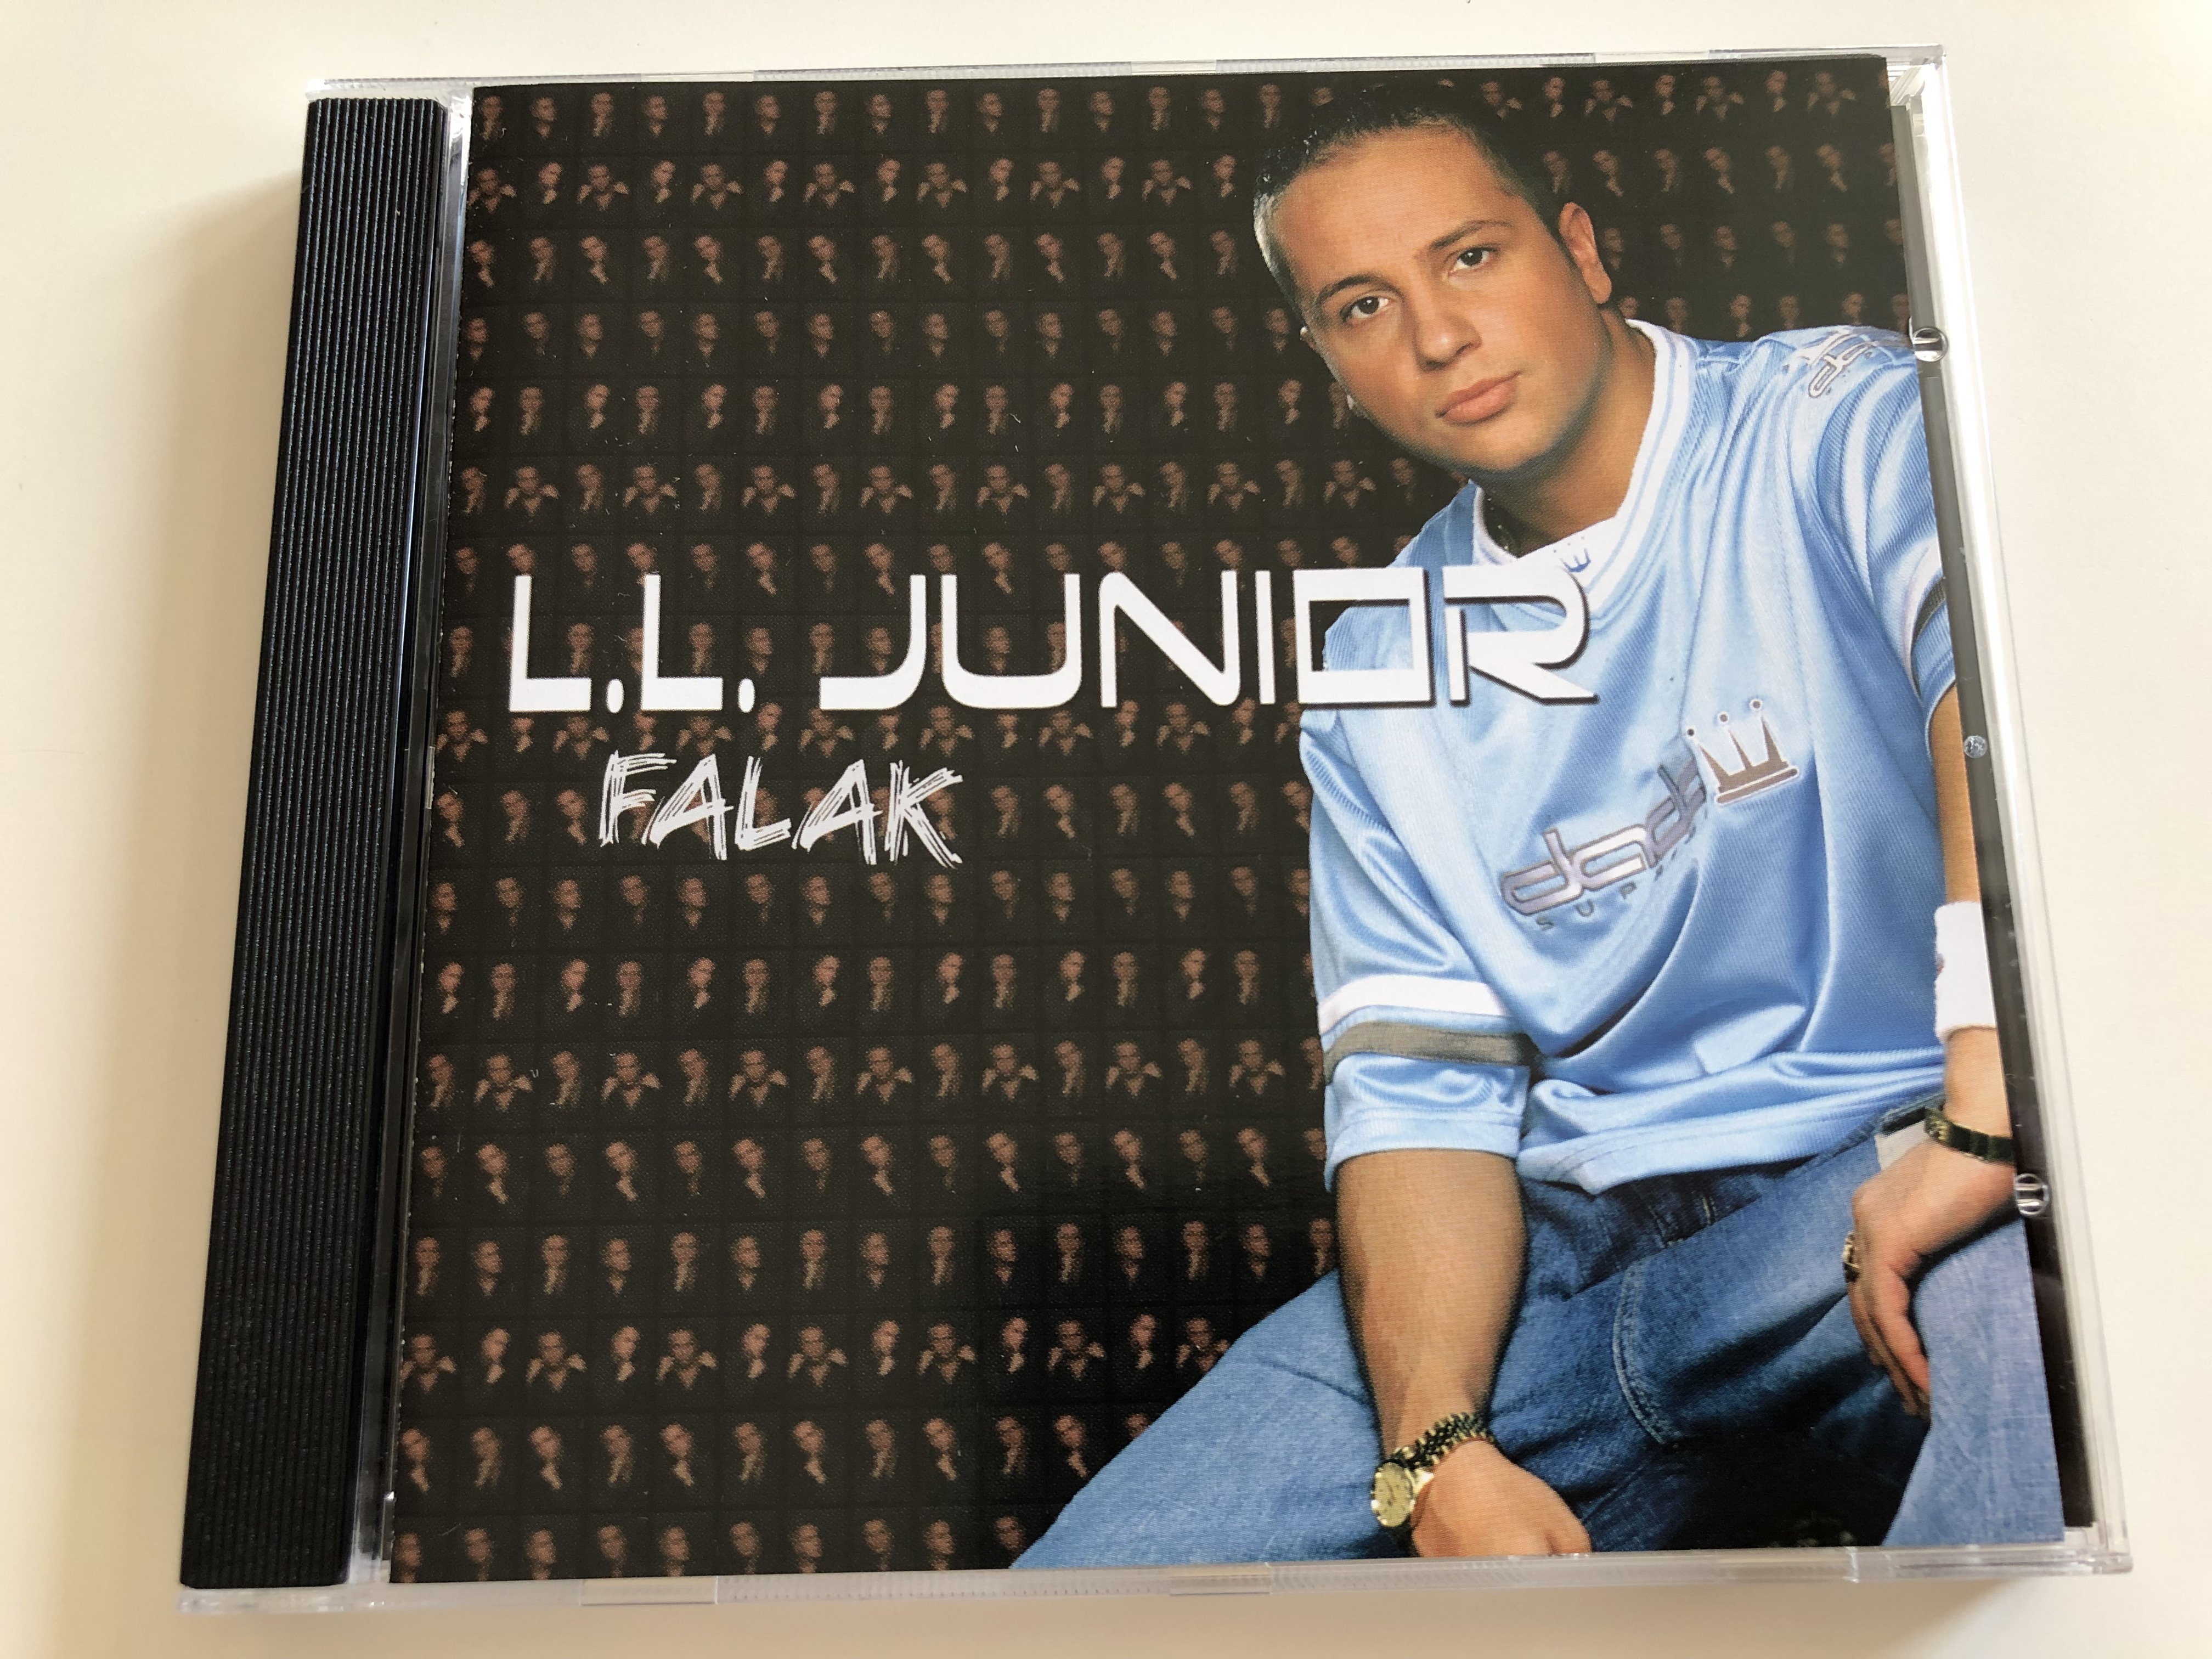 l.l.-junior-falak-magic-world-media-kft.-audio-cd-2005-mwm-ll-001-c-1-.jpg